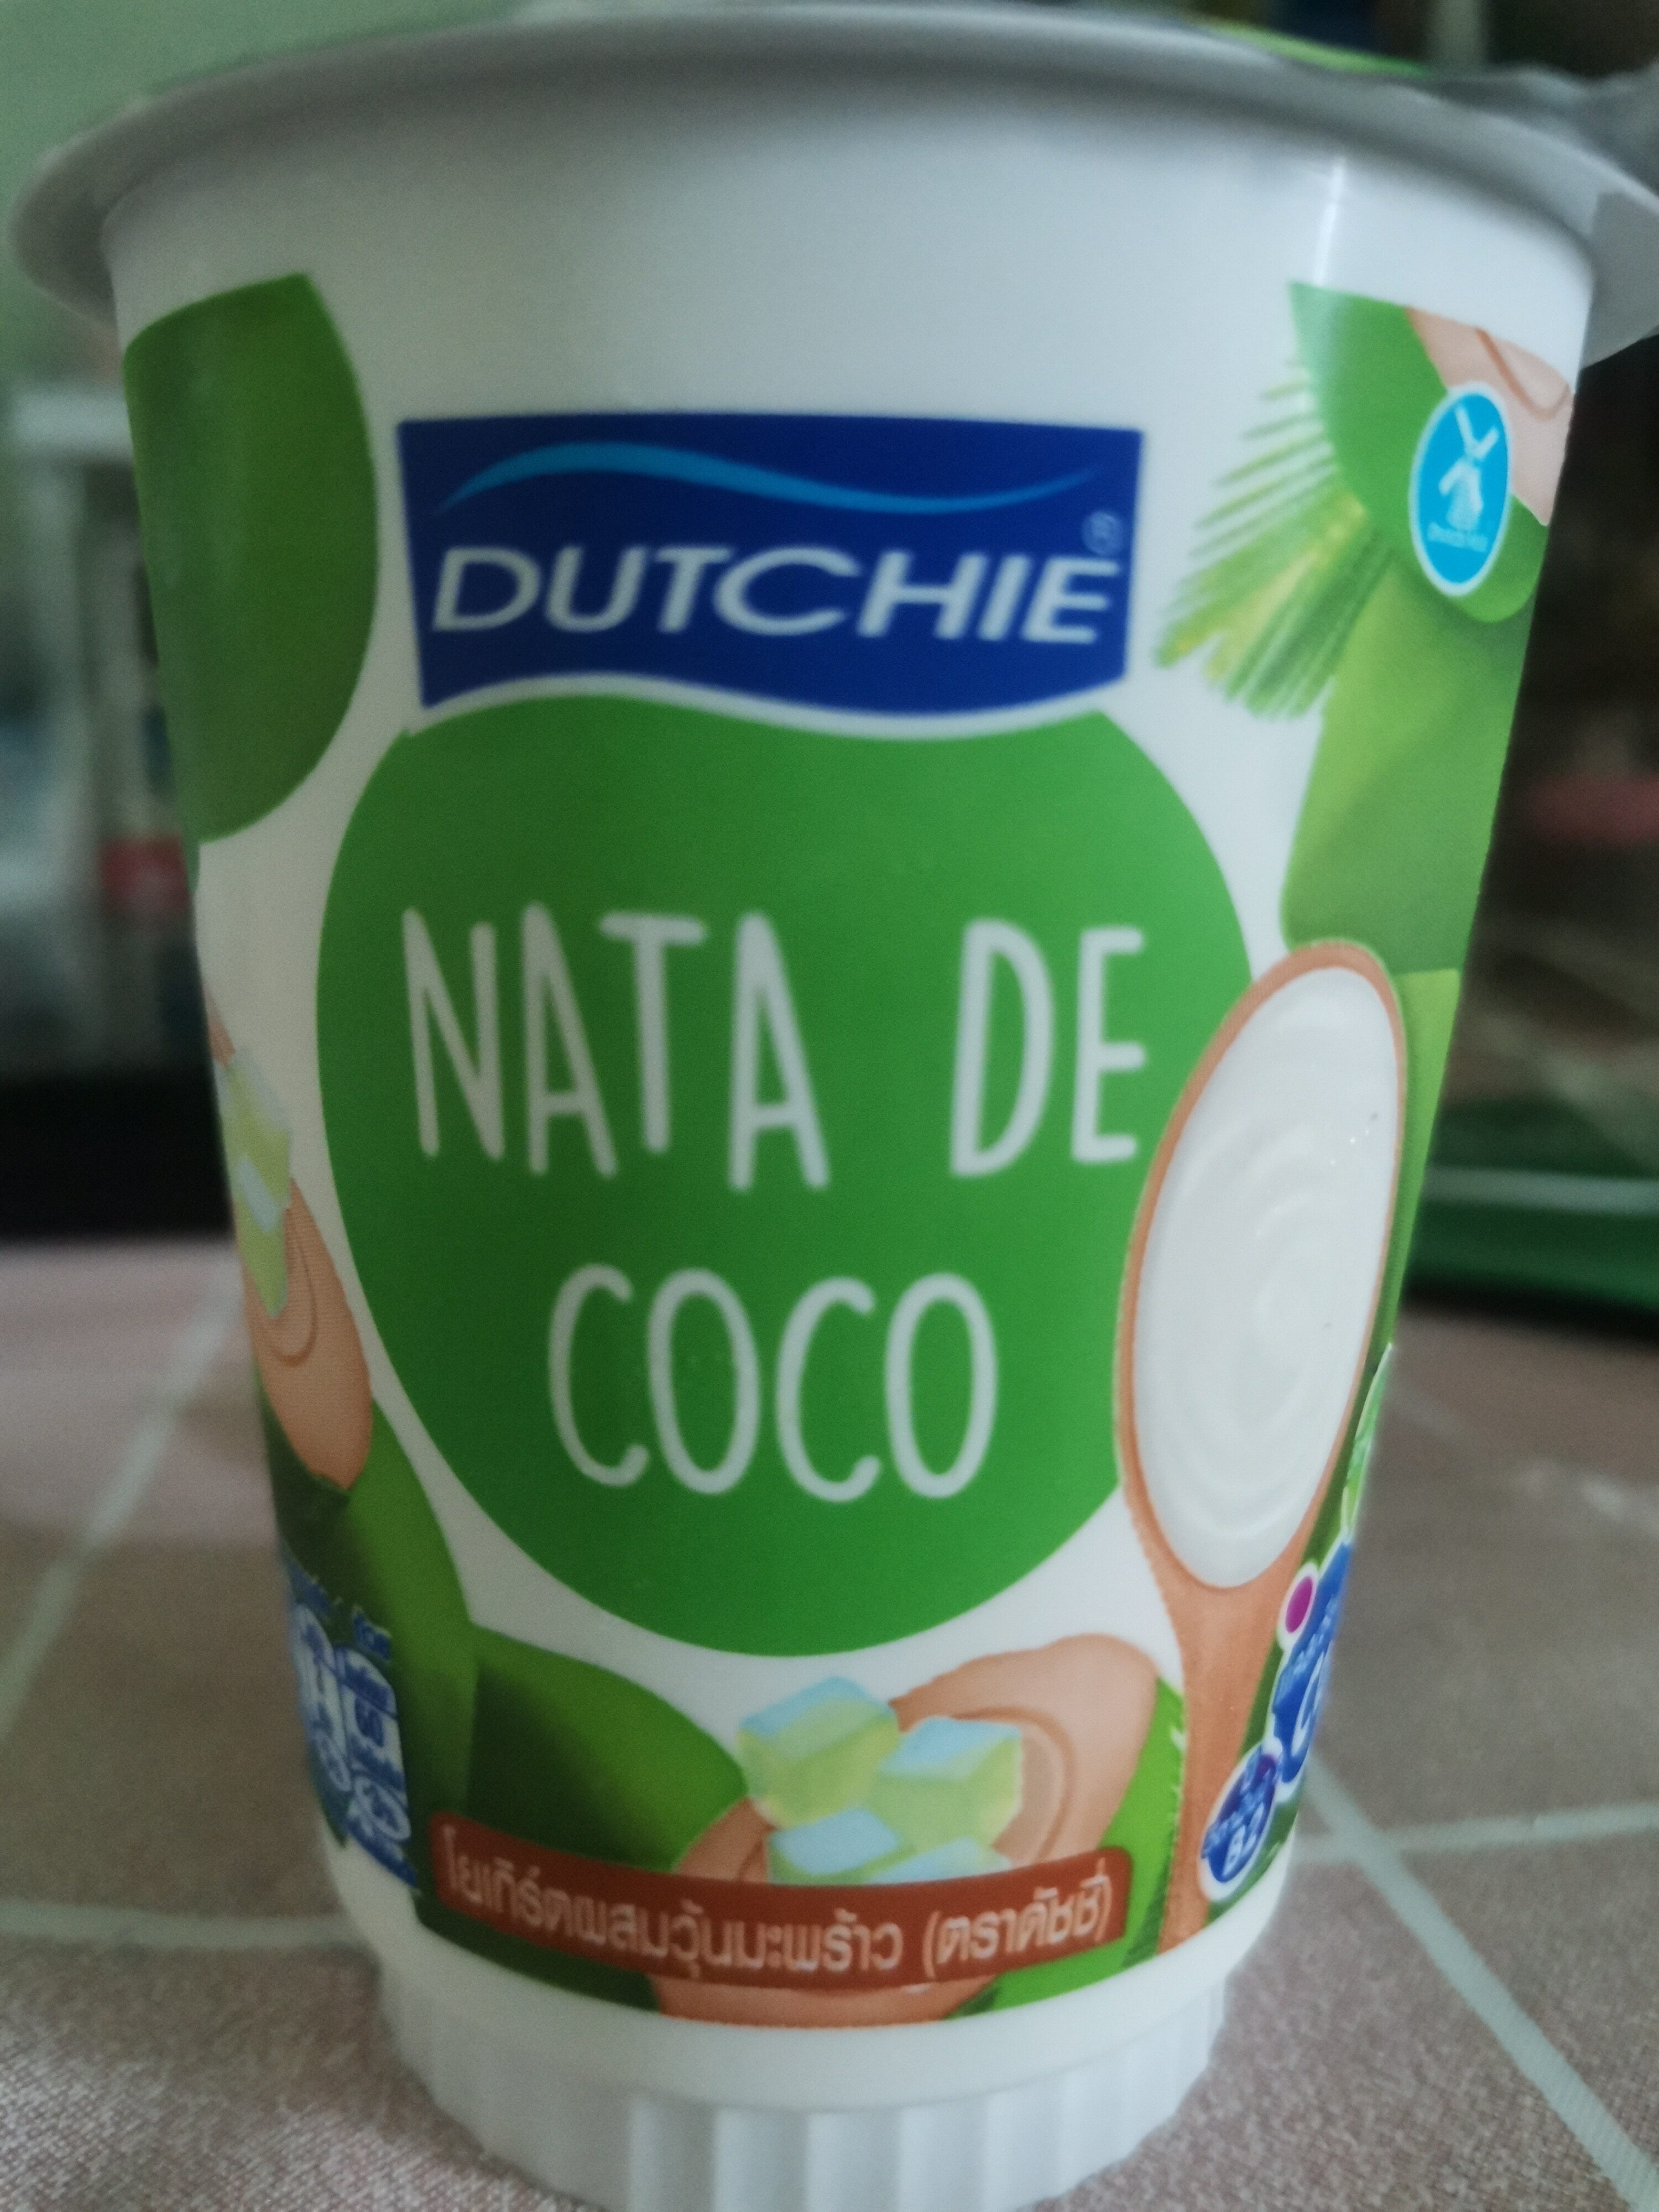 nata de coco - Produit - th